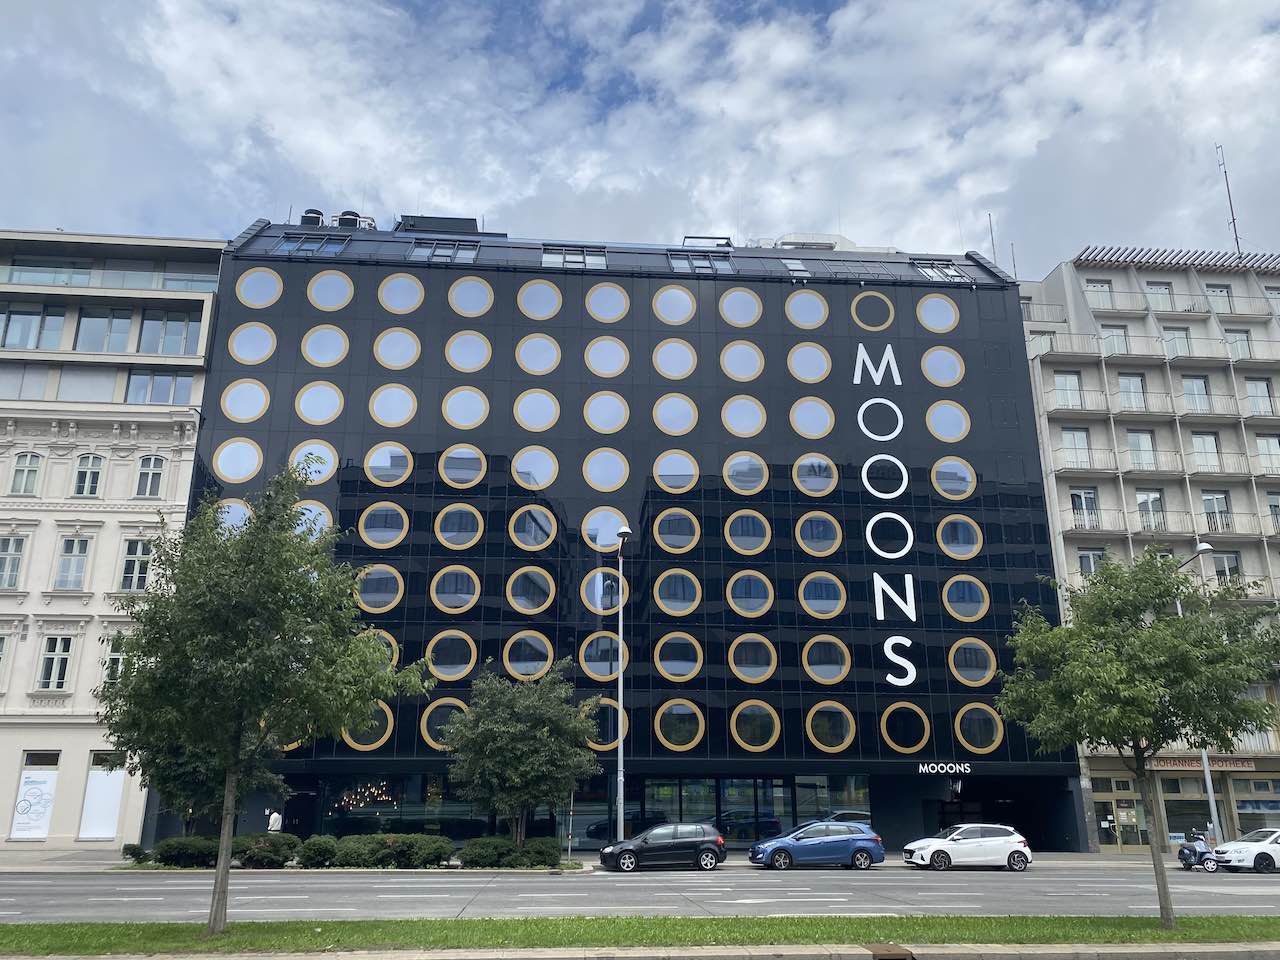 Fassade Mooons des Hotel Wien, das Real I.S. gekauft hat